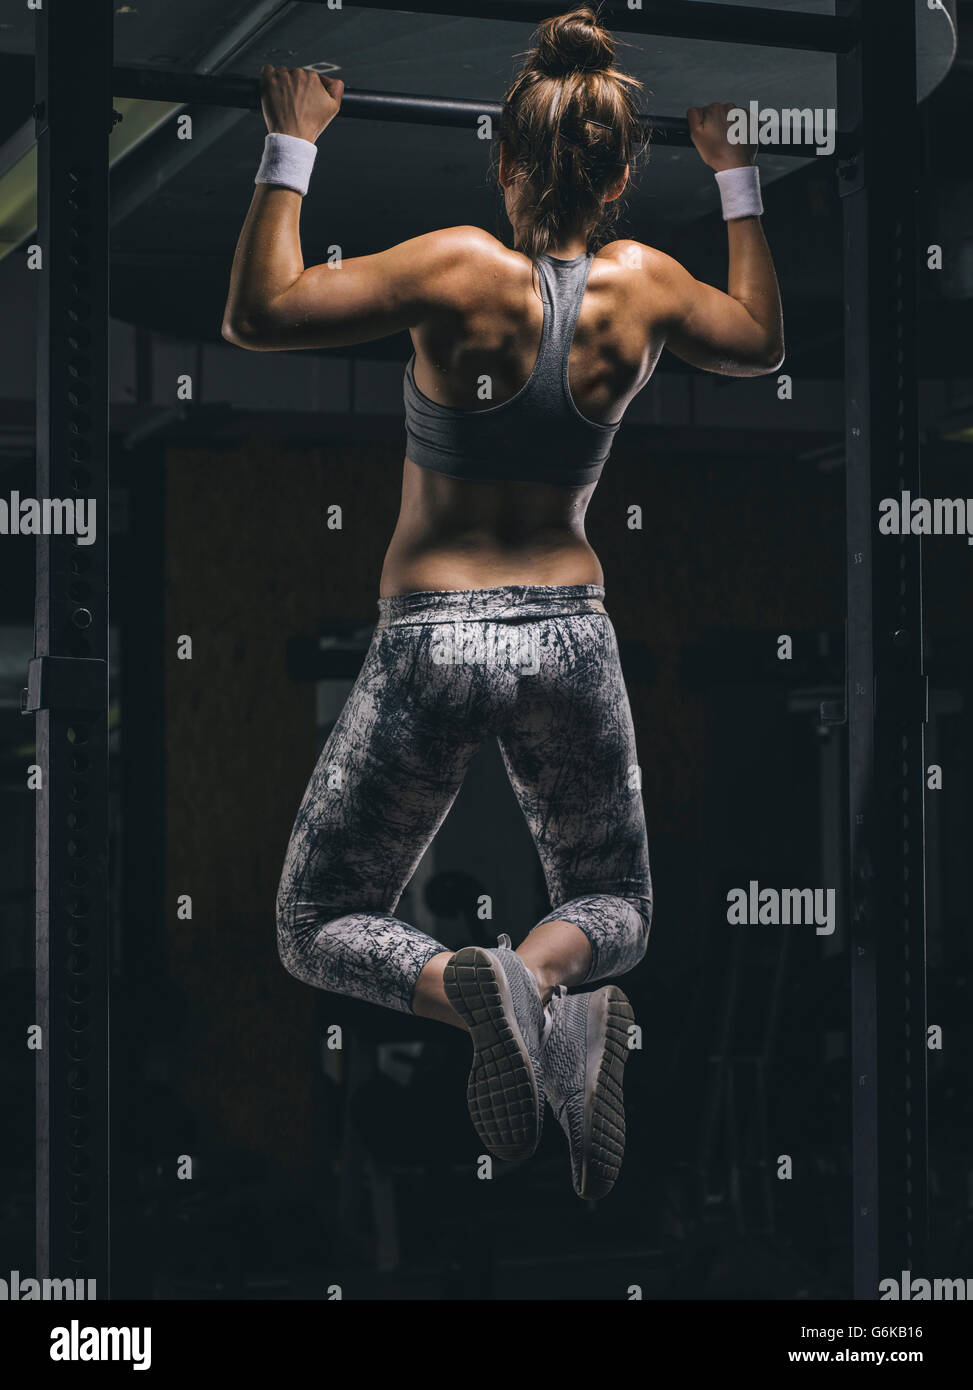 Female athlete exercising chin-ups Stock Photo